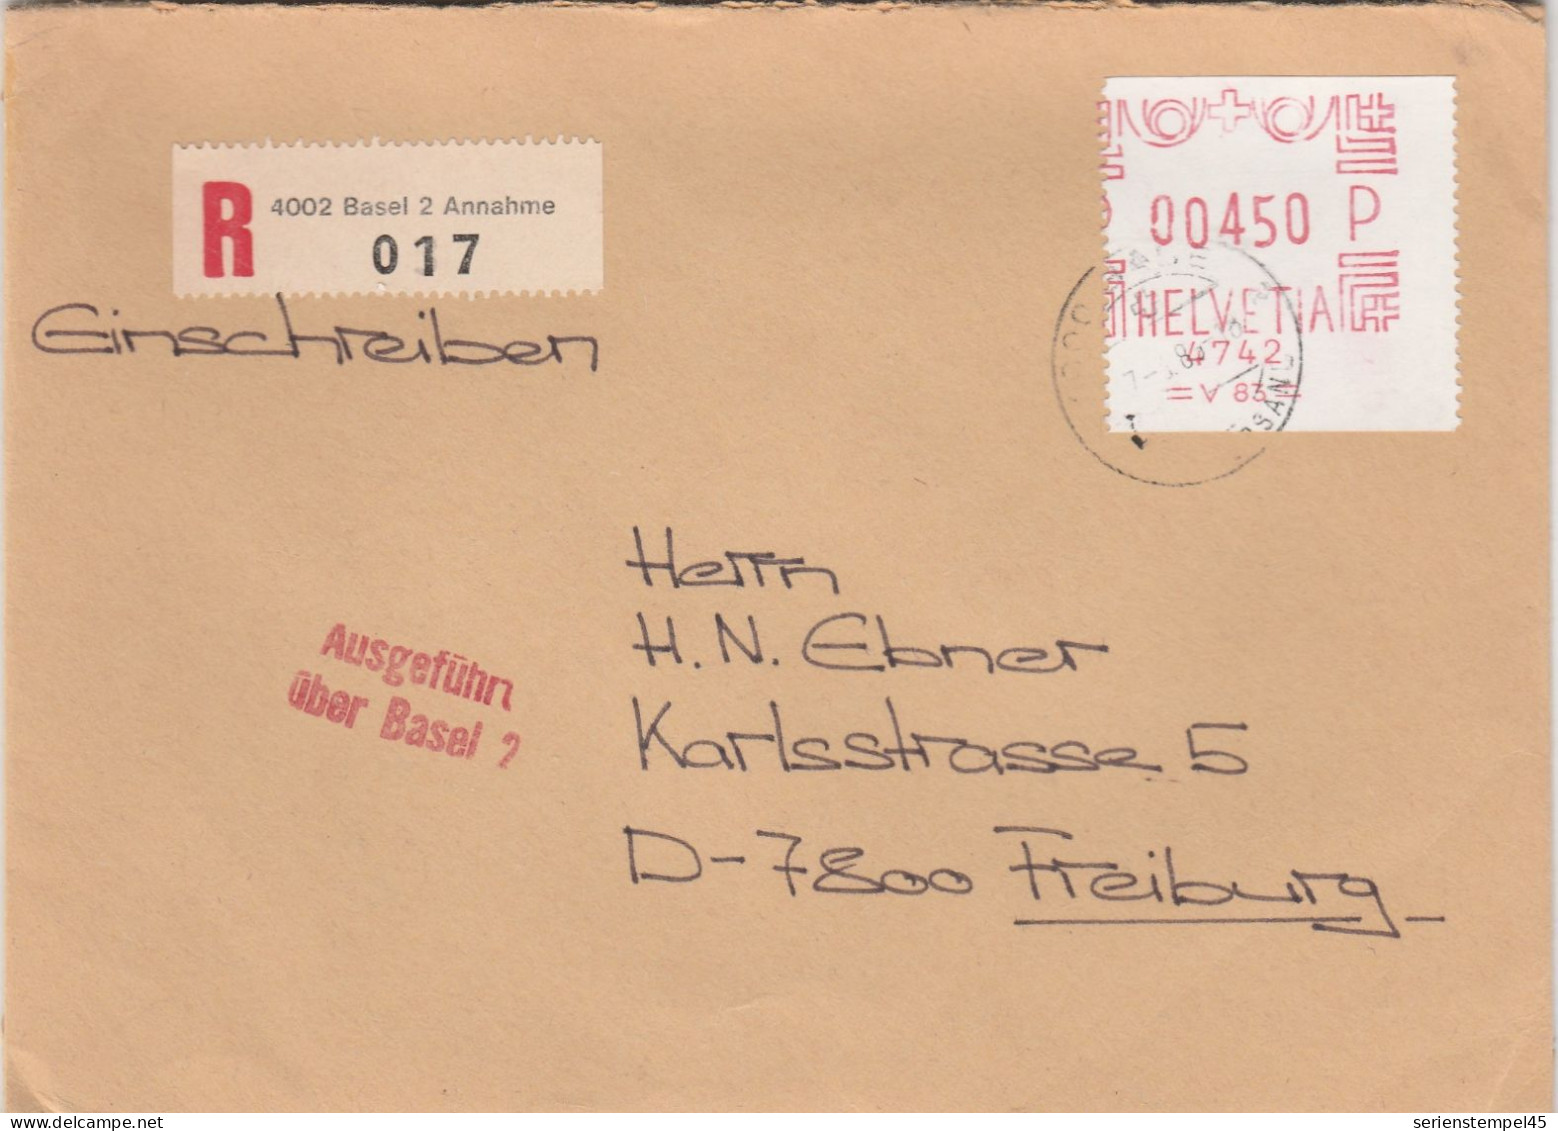 Schweiz Einschreiben Brief 4002 Basel 2 Annahme Mit Freistempel 4742 Porto 450 P 1985 - Affranchissements Mécaniques